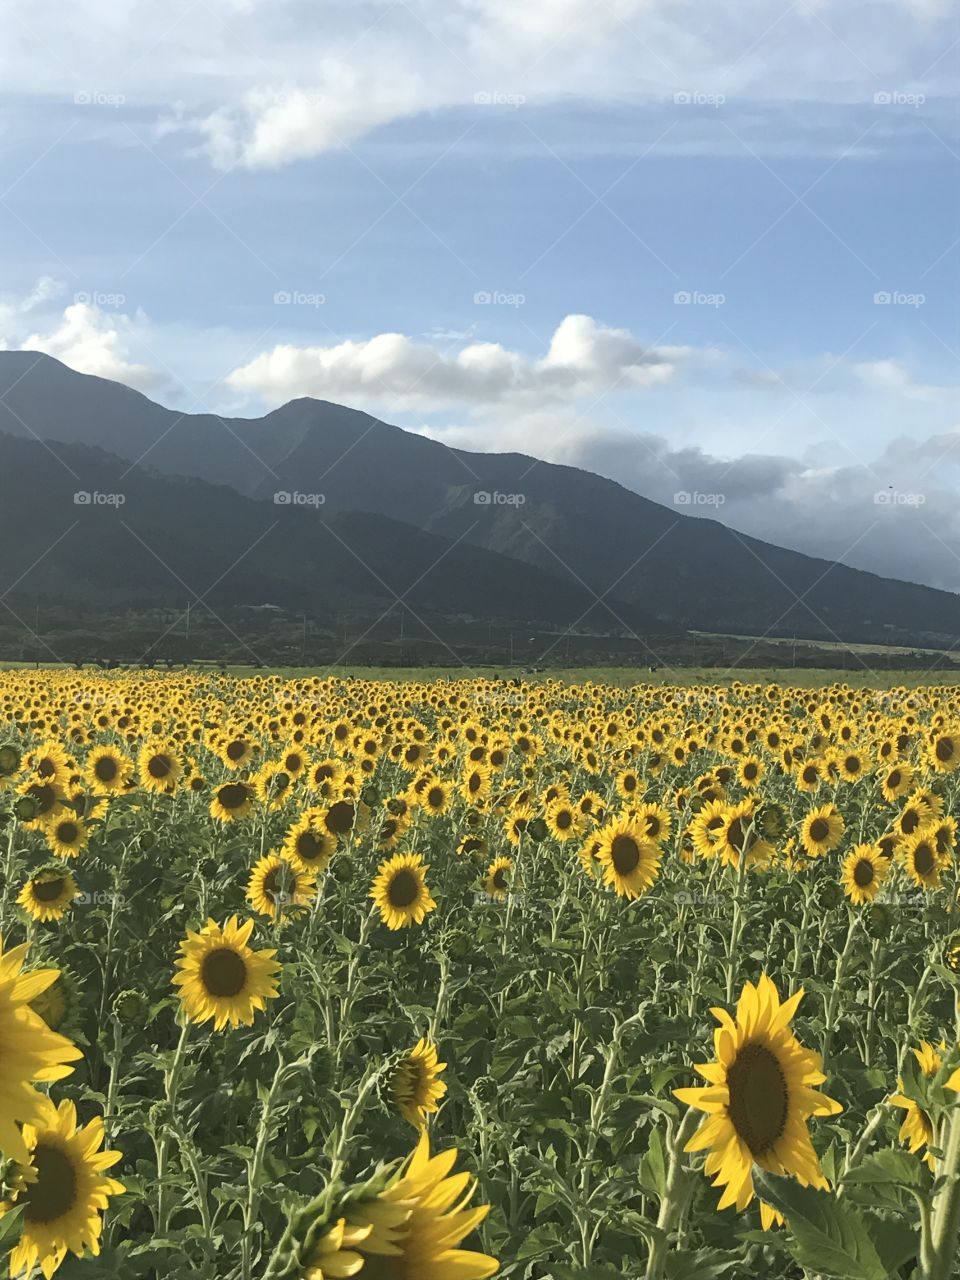 Sunflower Field in Maui